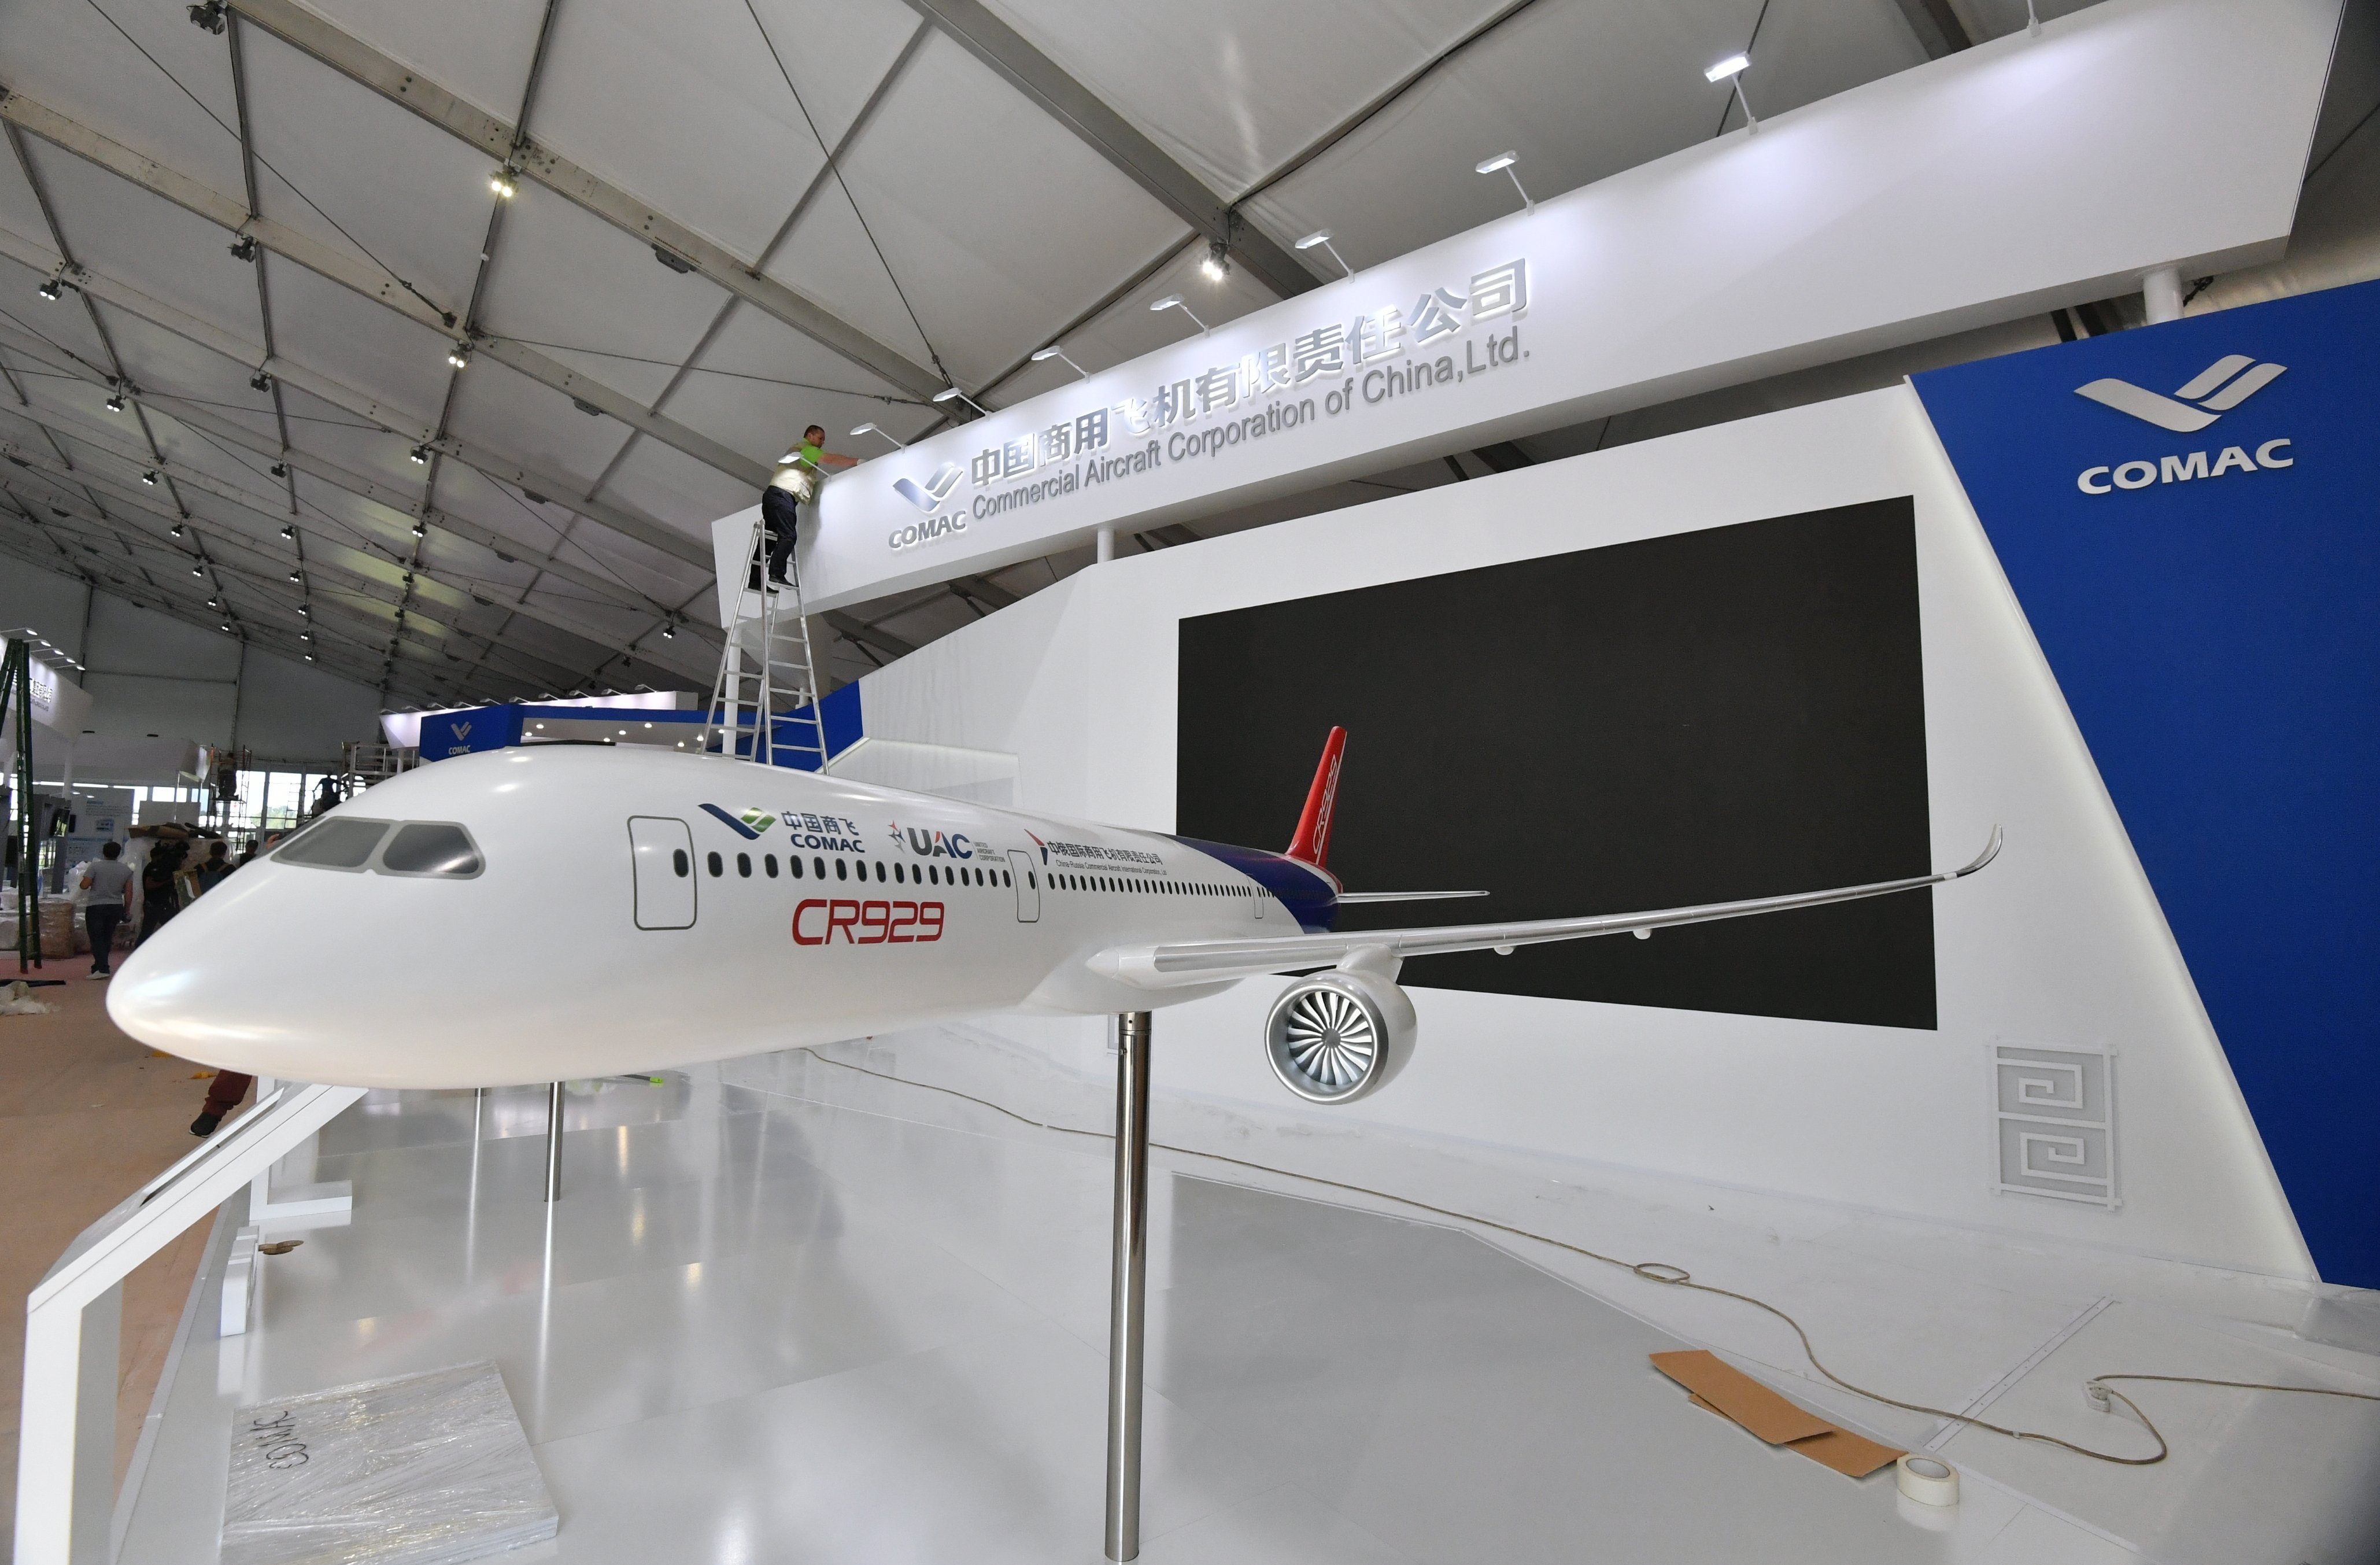 中国在莫斯科航展上展示了自己的航空和太空技术新品